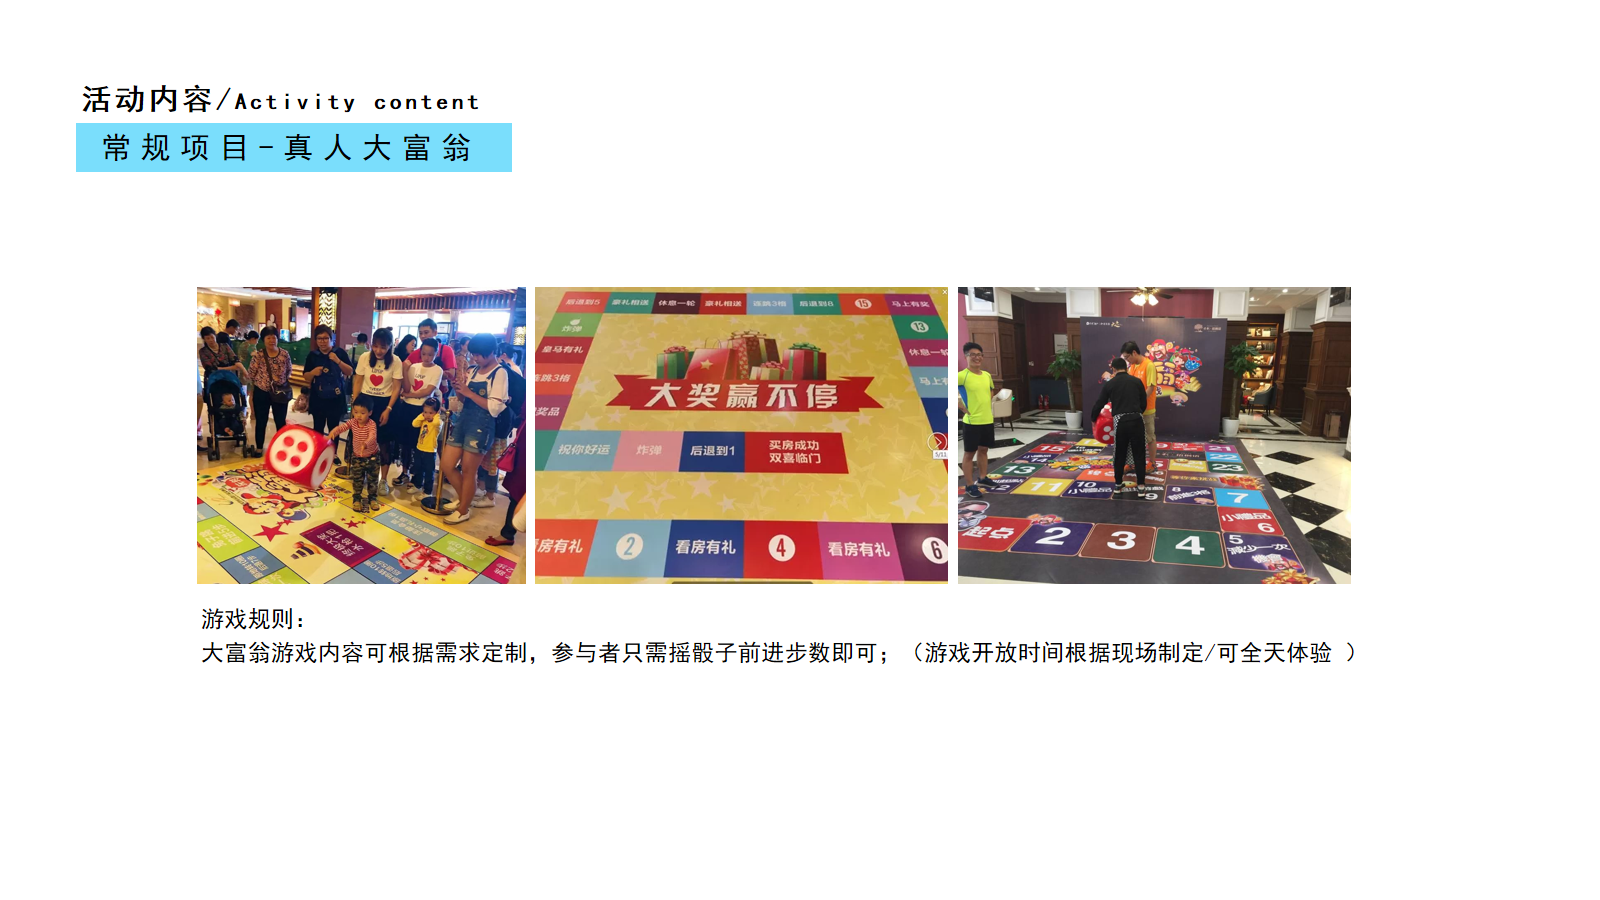 商业广场国庆「亲子童年·疯狂假期」嘉年华活动策划方案